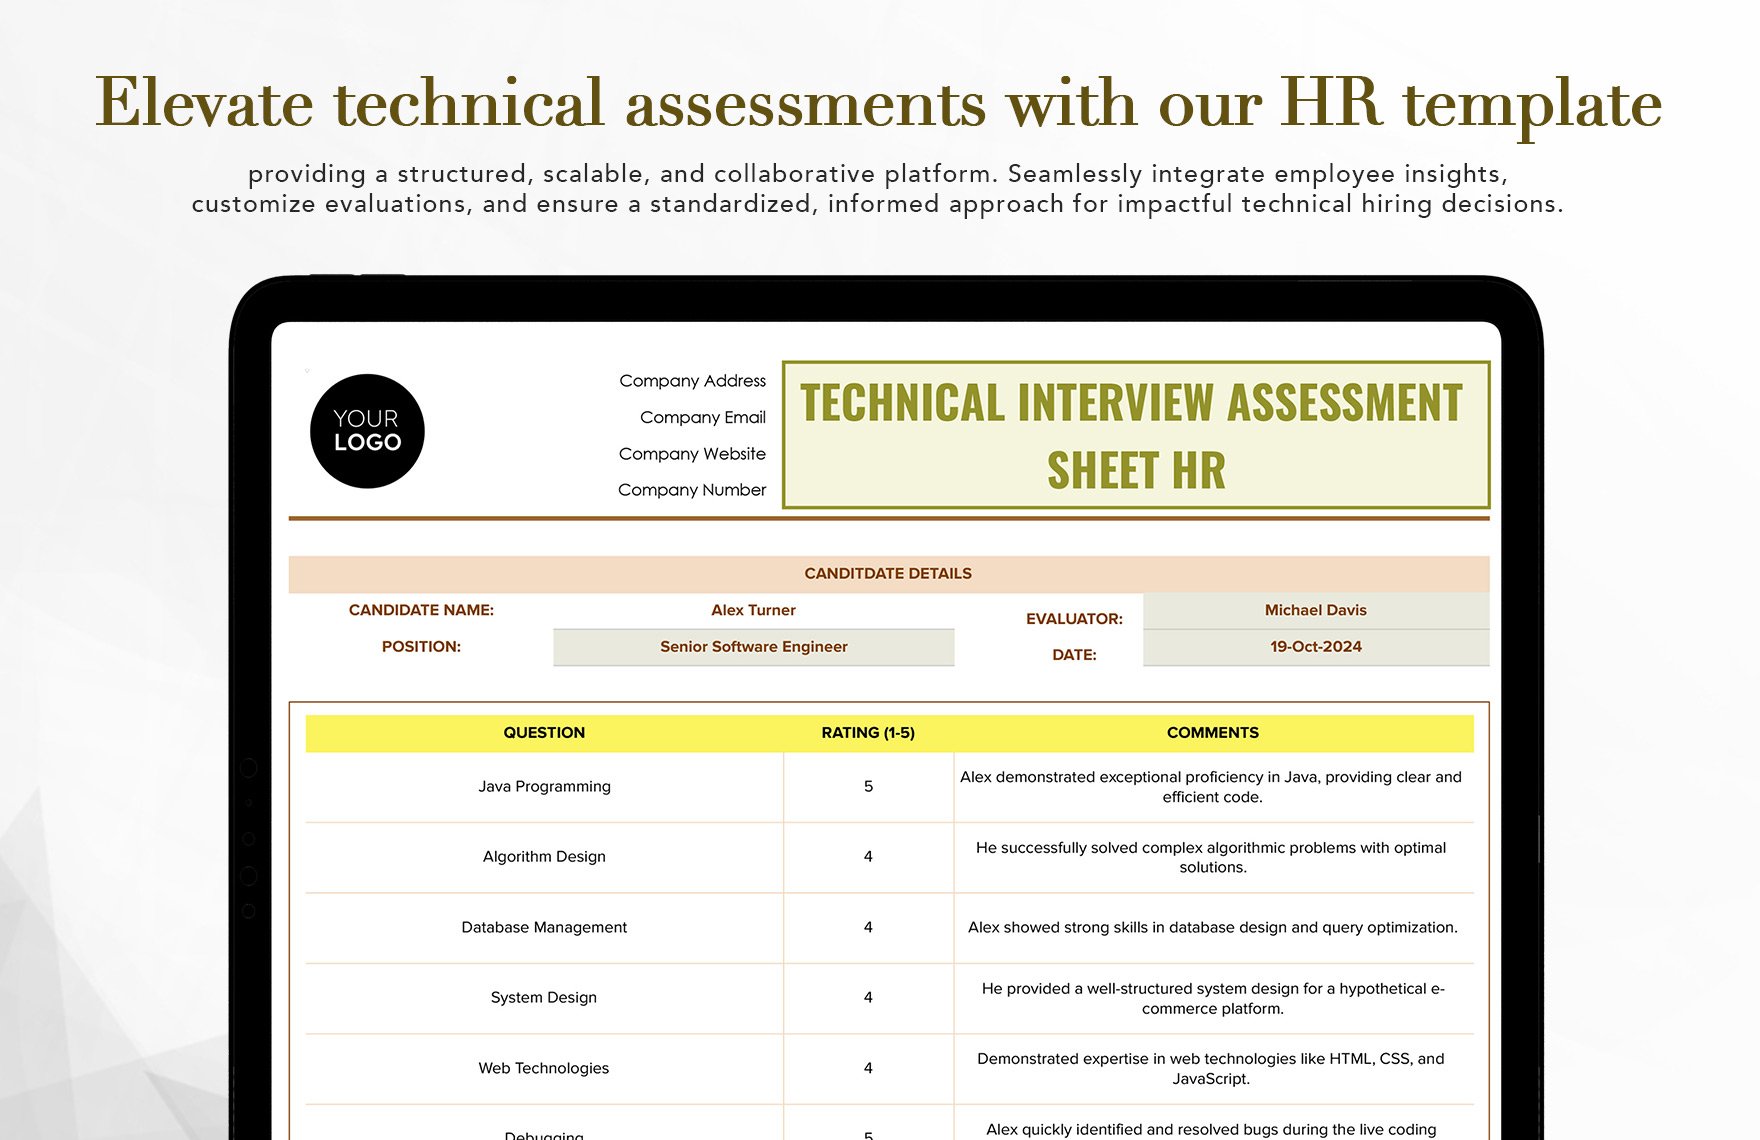 Technical Interview Assessment Sheet HR Template